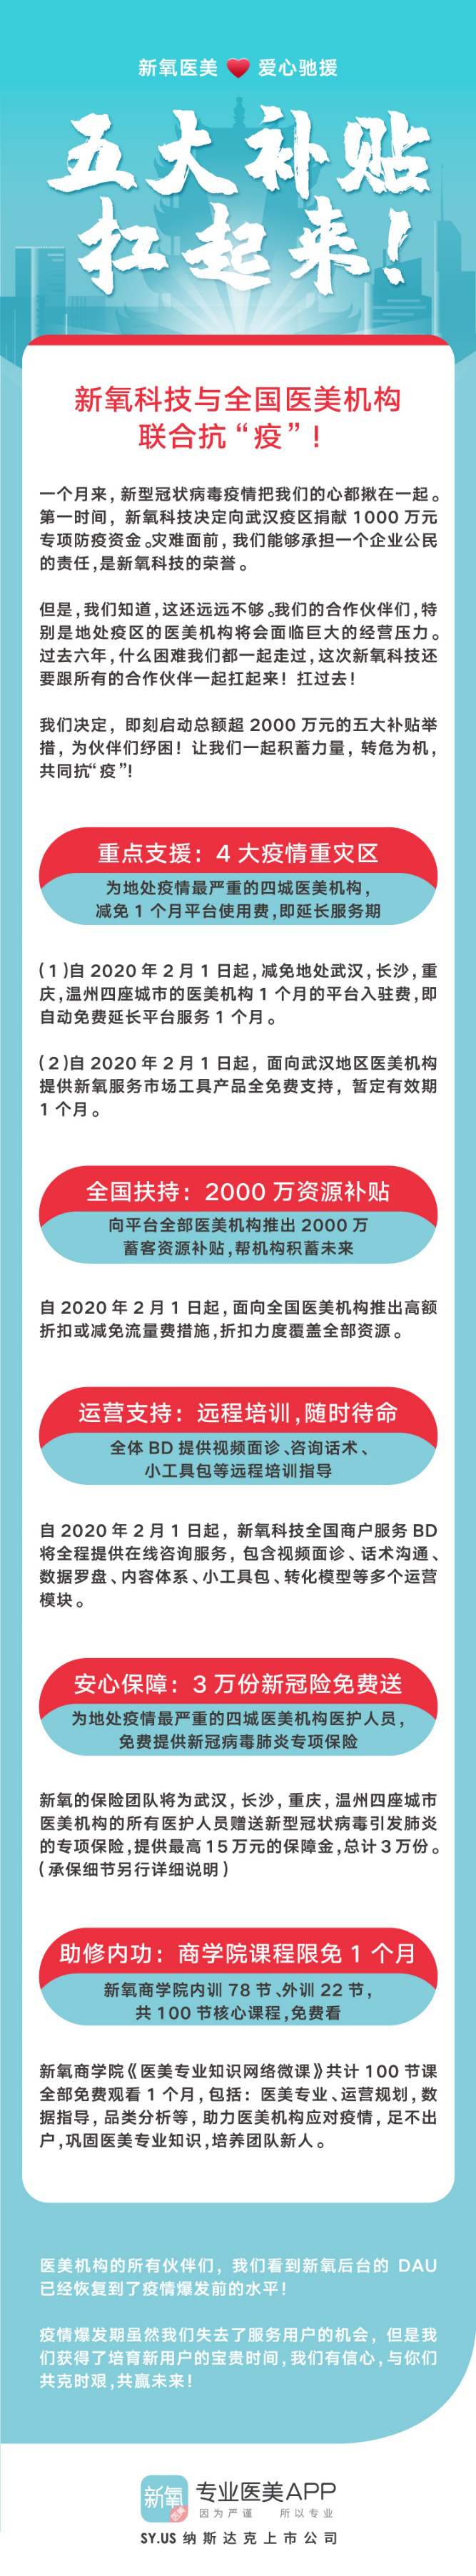 线下危机线上支援新氧科技宣布为中国医美机构提供超2000万补贴